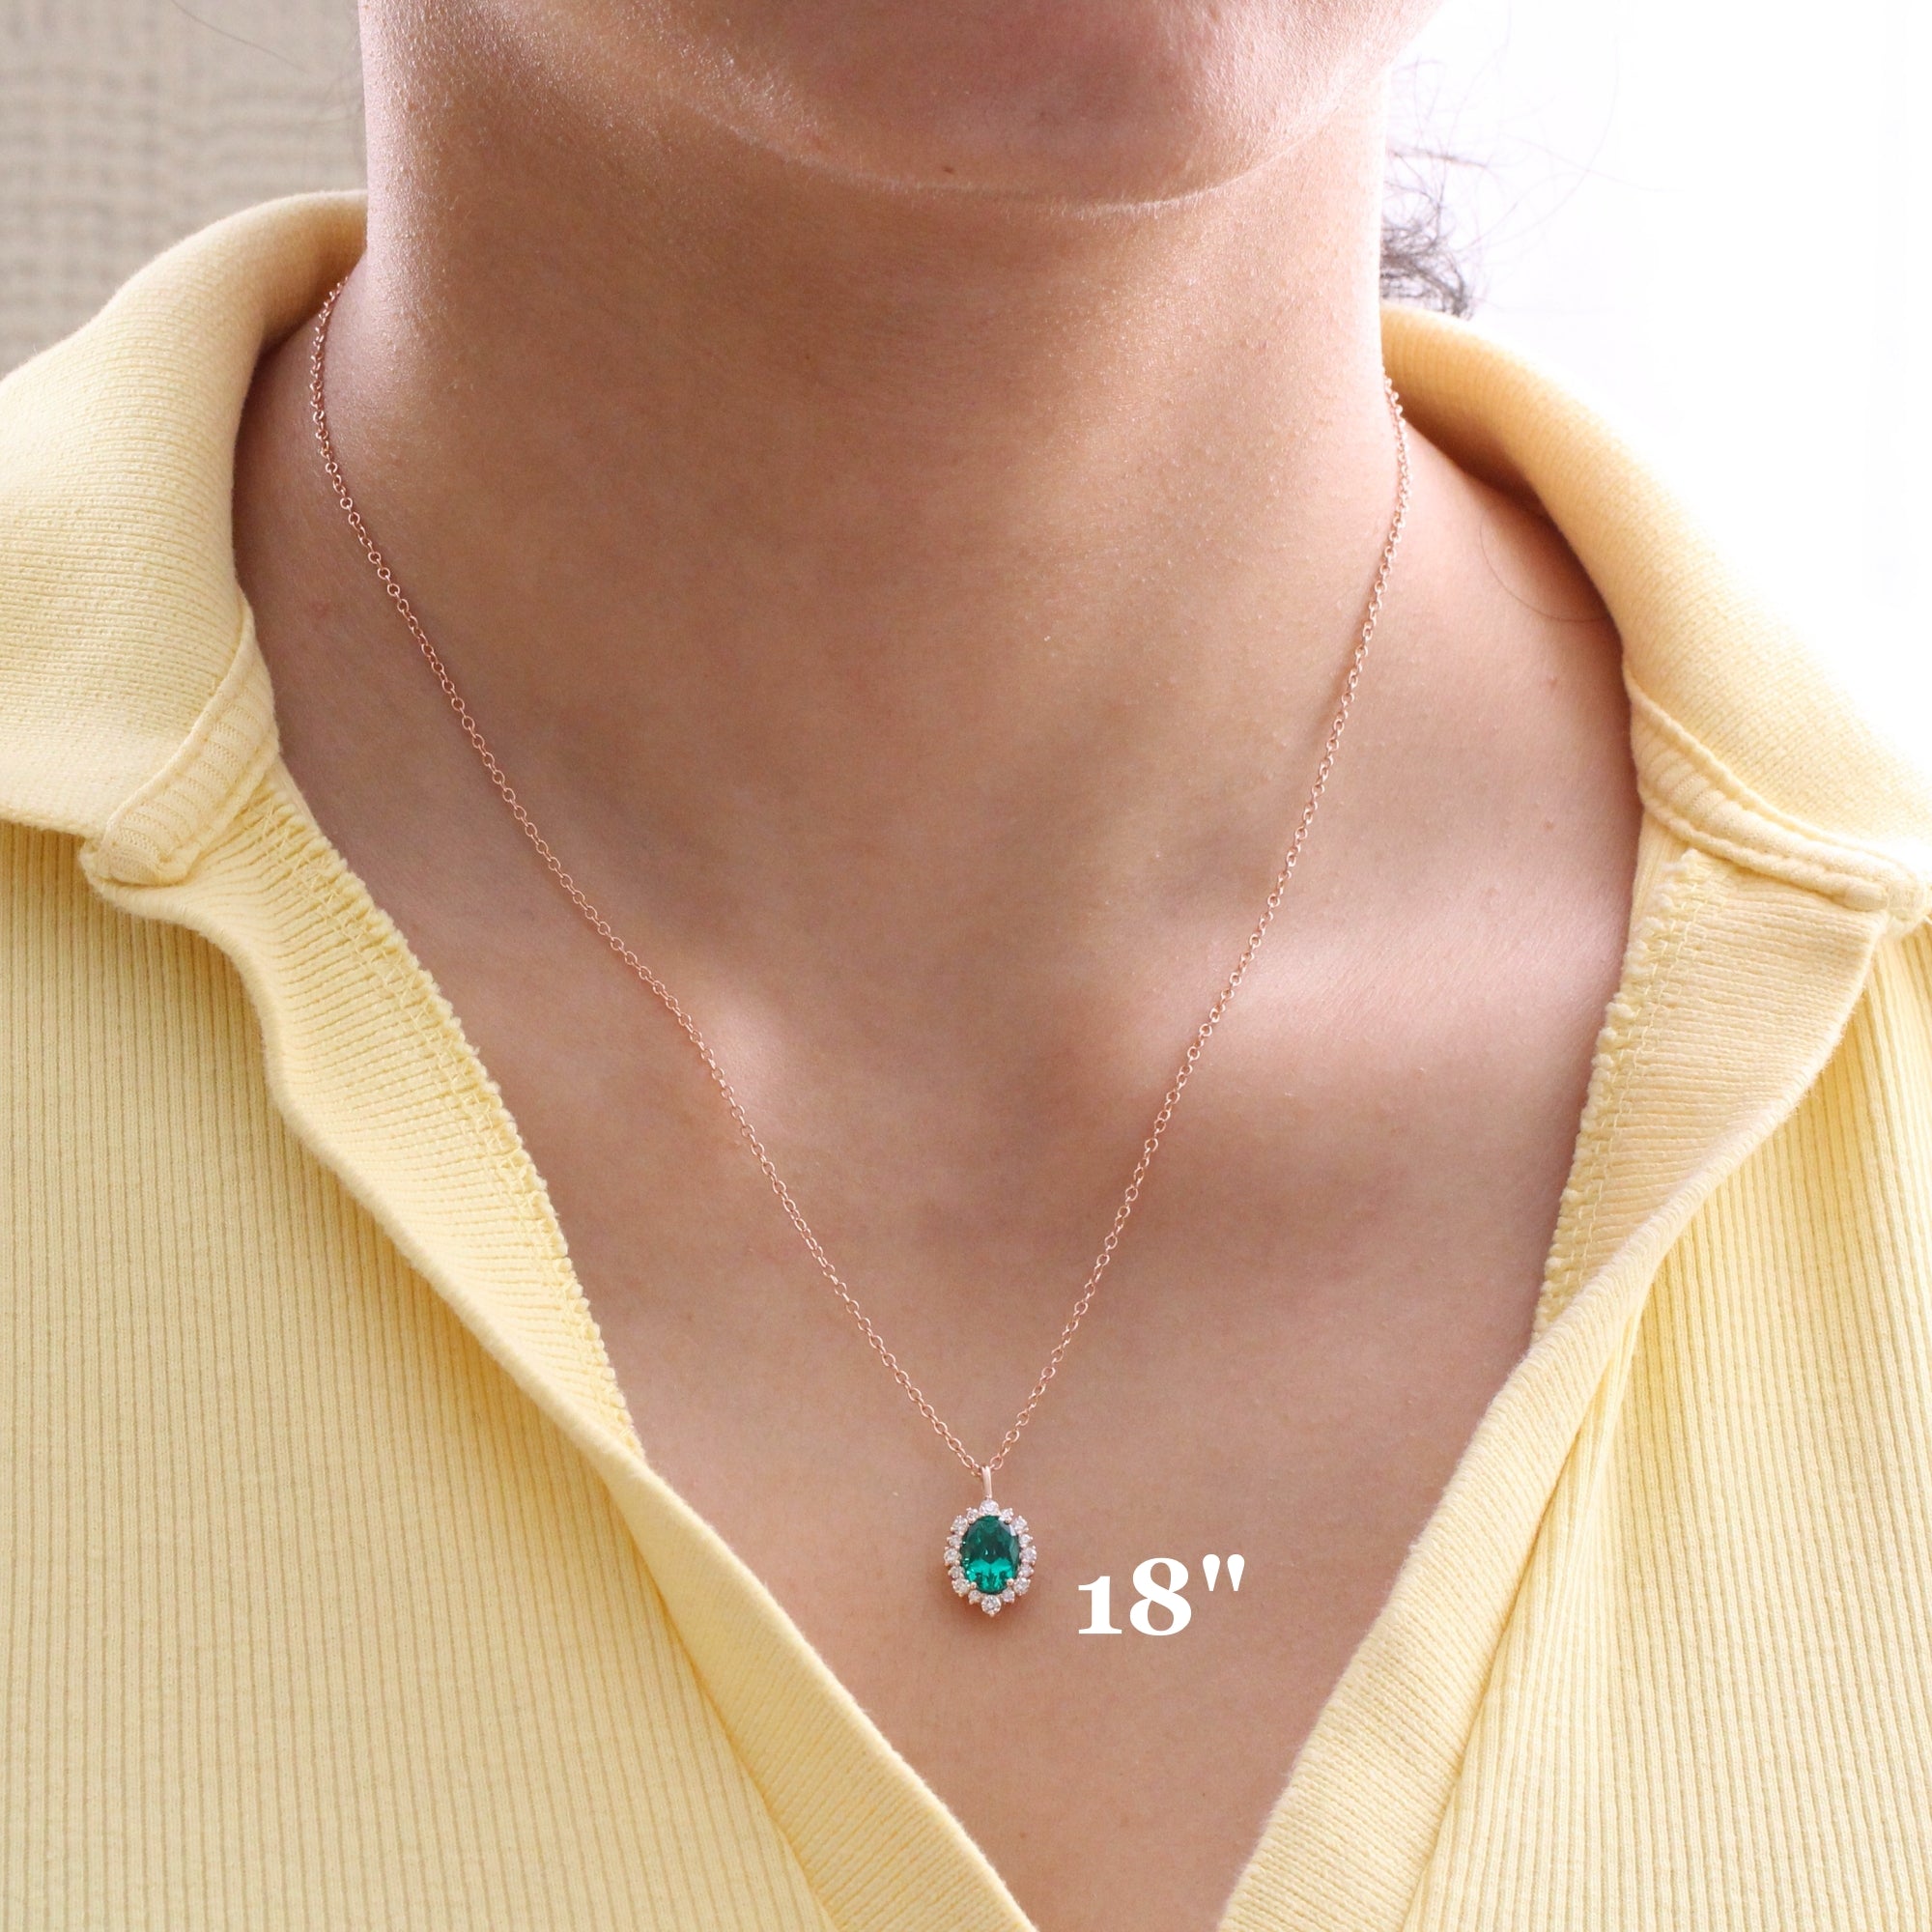 Oval emerald necklace rose gold emerald halo diamond drop pendant necklace la more design jewelry